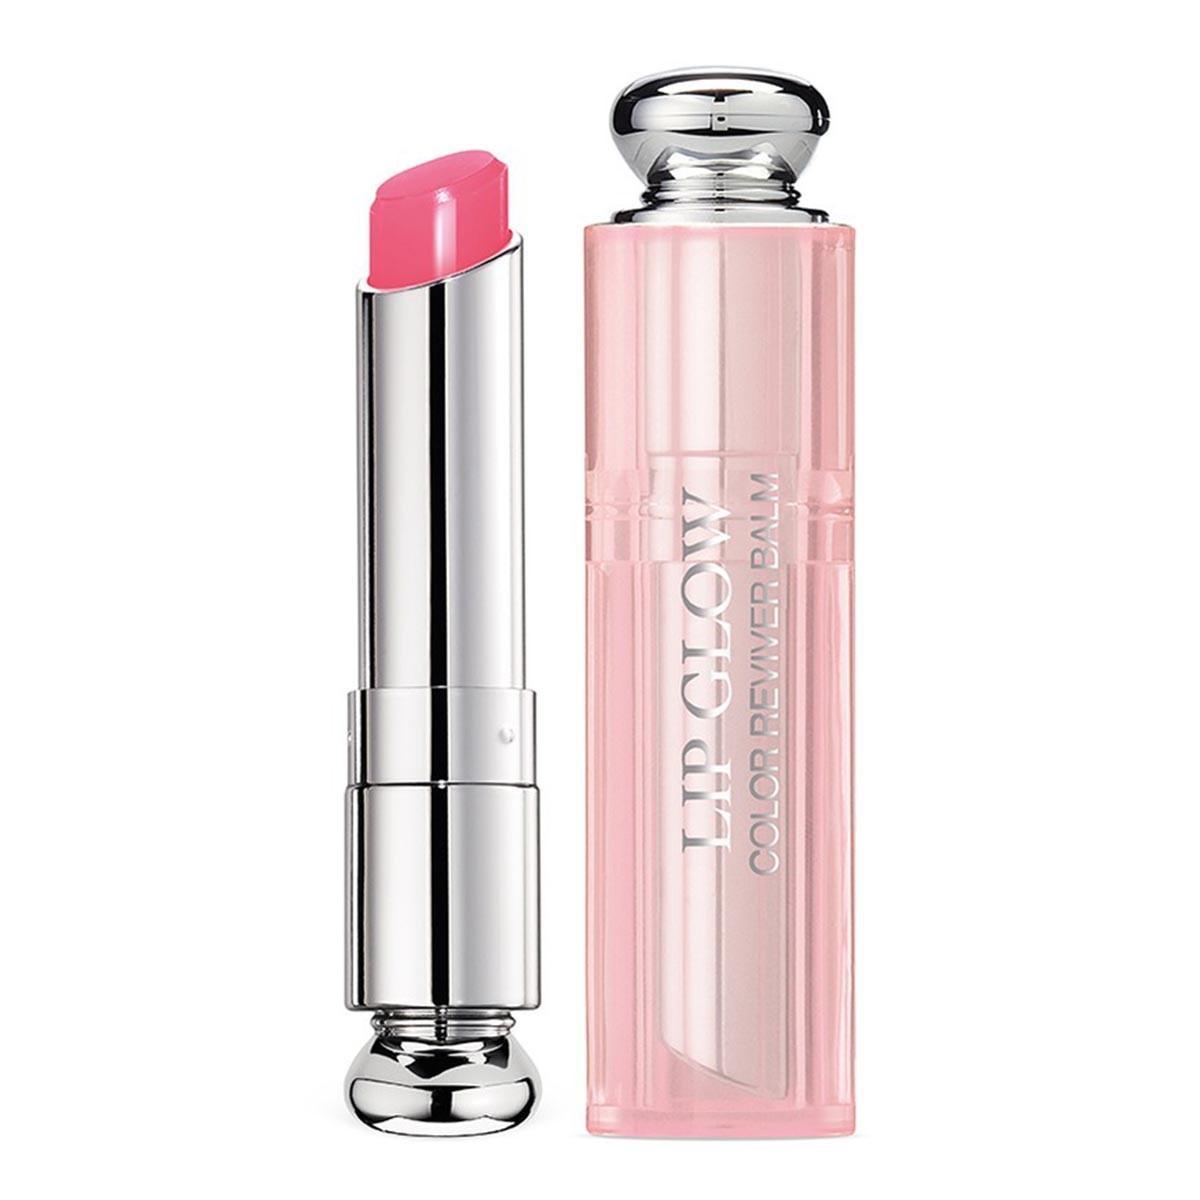 Christian Dior Addict Lip Glow Балсам за устни за сияен ефект